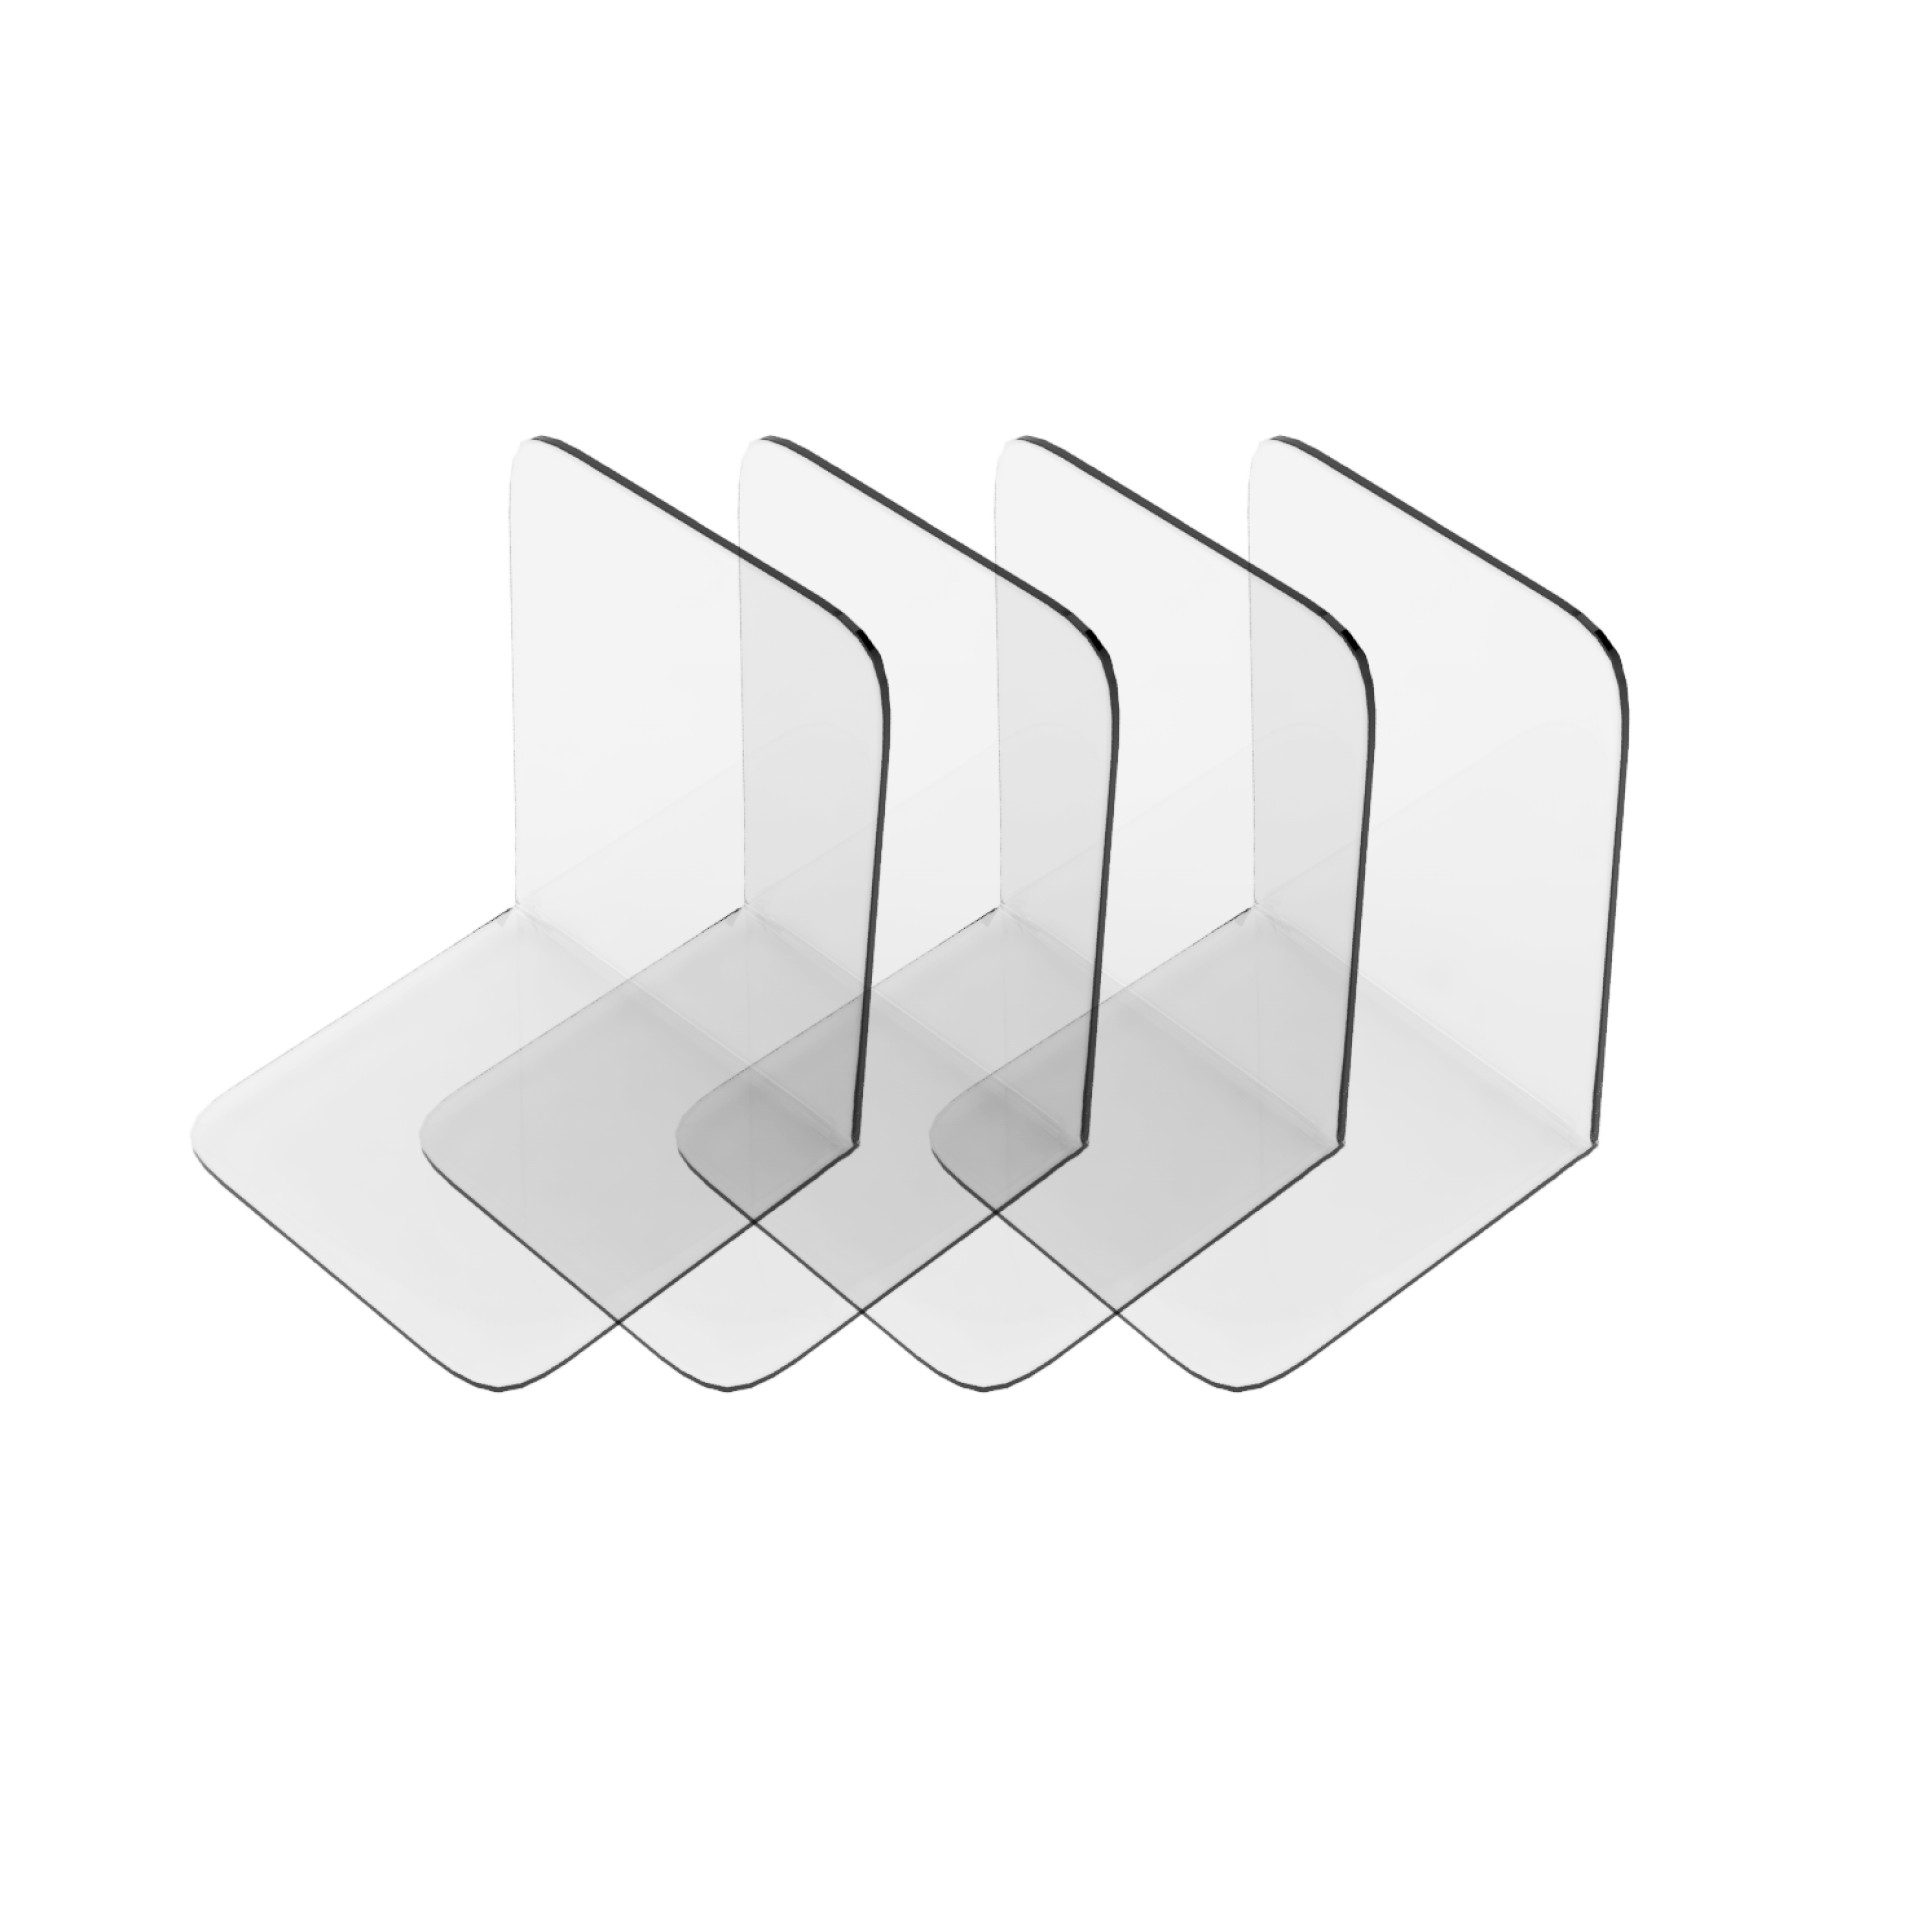 Semper Plastic Acryl Buchstützen Set mit rutschfesten Silikonpads - Dekorative Buchstütze aus transparentem und bruchsicherem Acryl - Unsichtbare Regal Buchhalter für Bücher, Lexika und DVDs